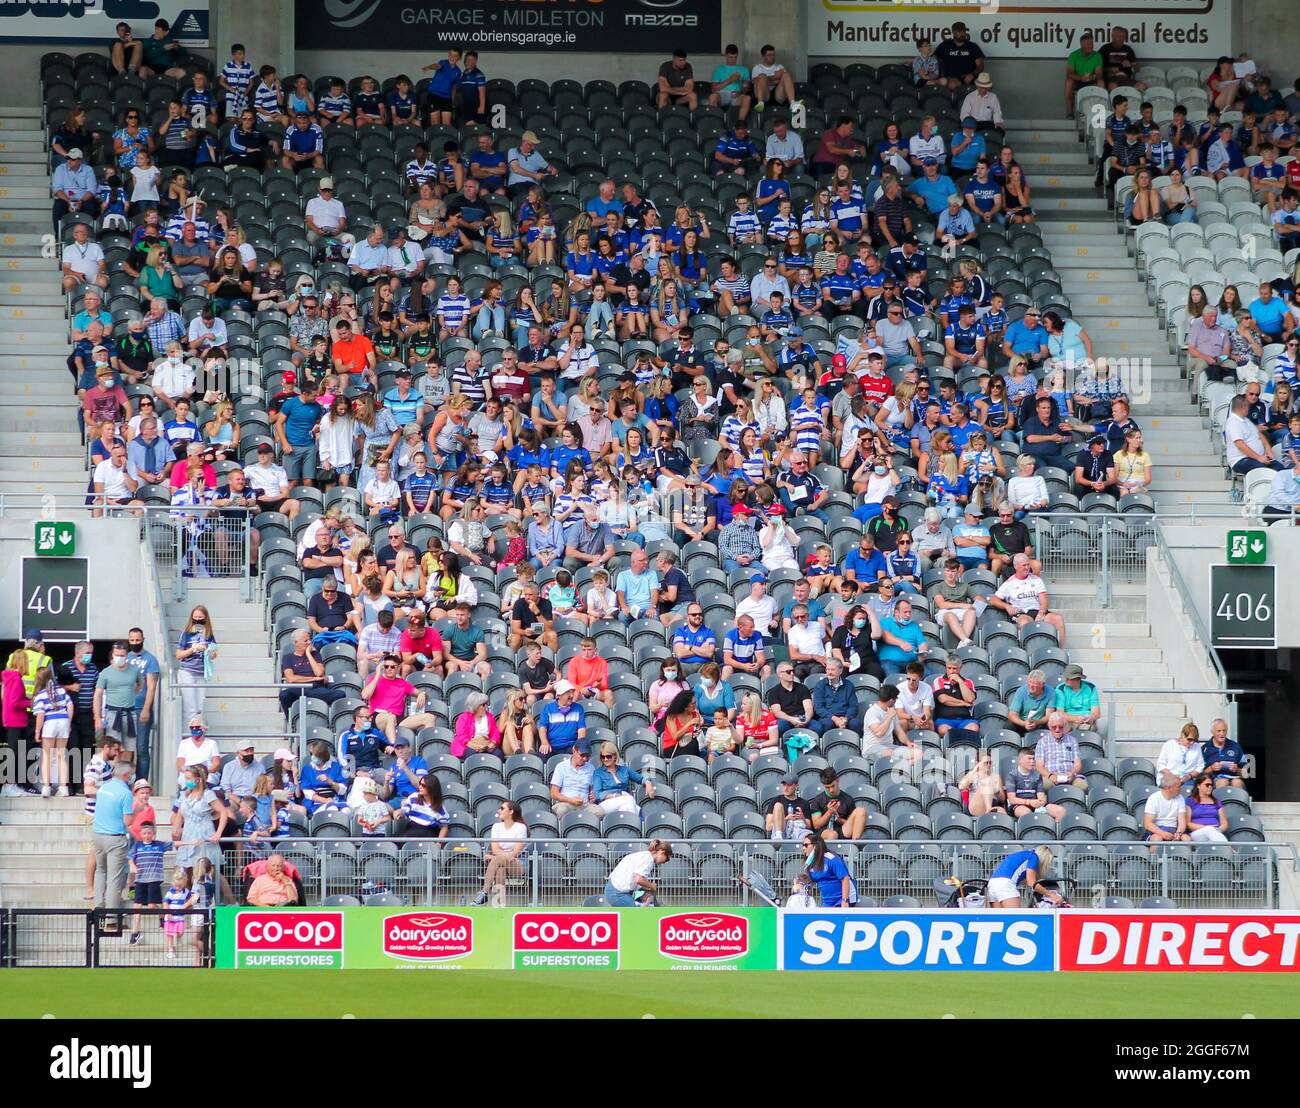 Menschenmassen beobachten GAA-Fußball im pairc ui chaoimh, Cork City, Irland Stockfoto